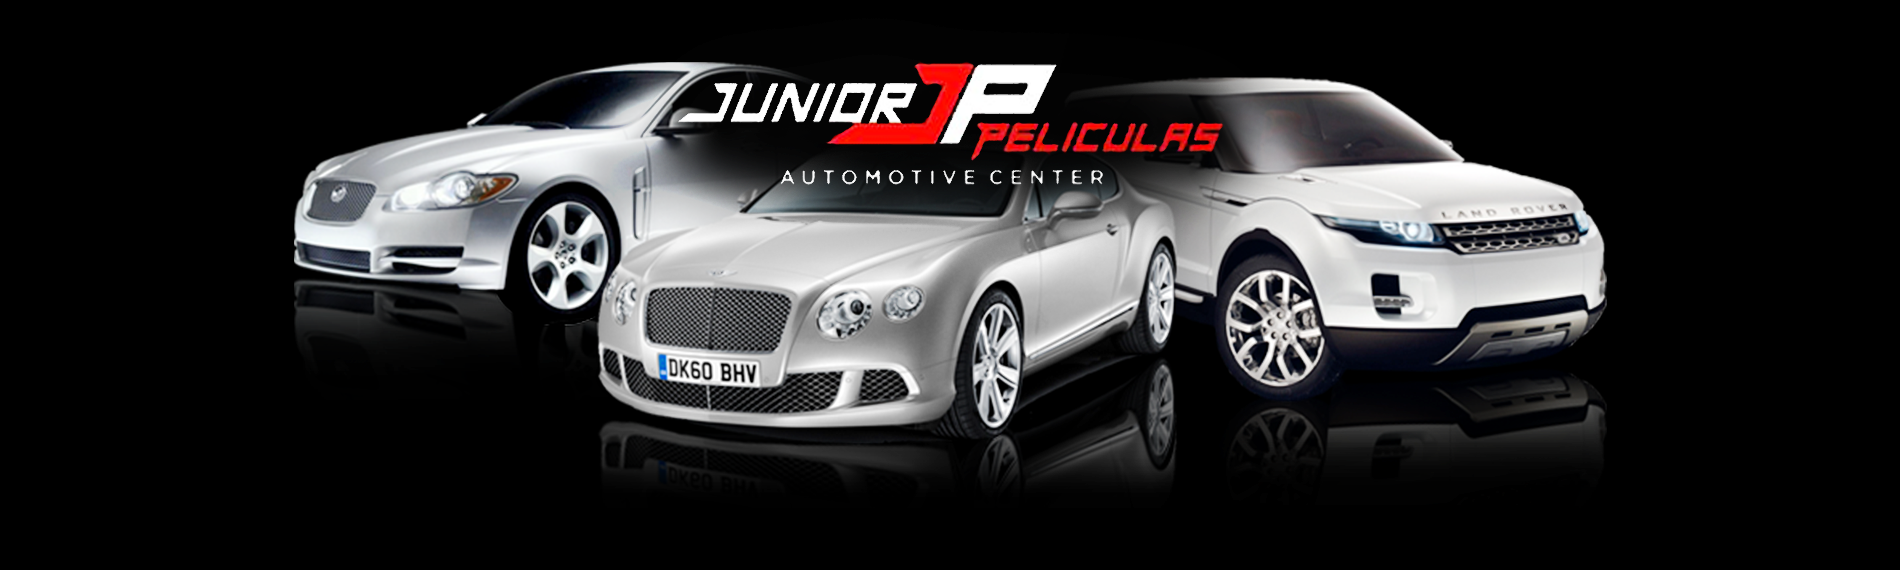 banner da empresa Júnior Películas Automotive Center